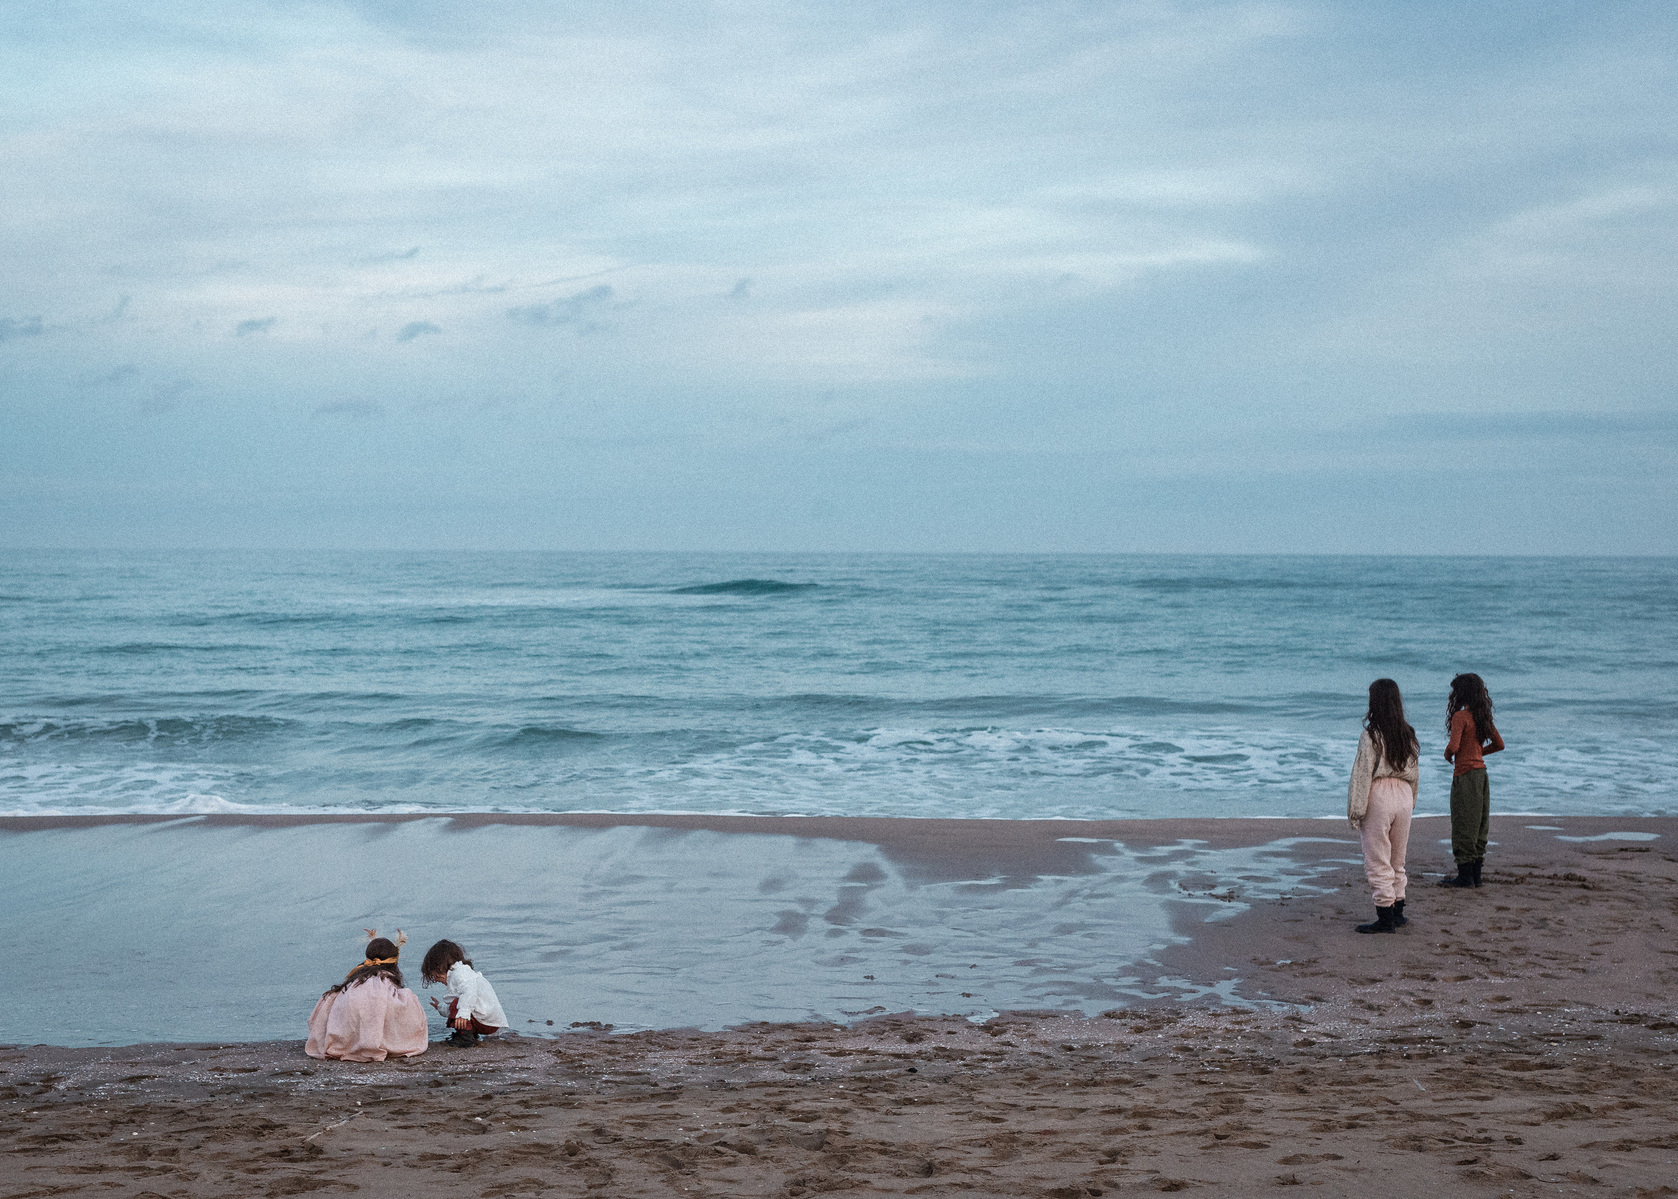 cuatro hermanos contemplando el mar de sant Pere pescador, bahía de rosas, Catalunya. 